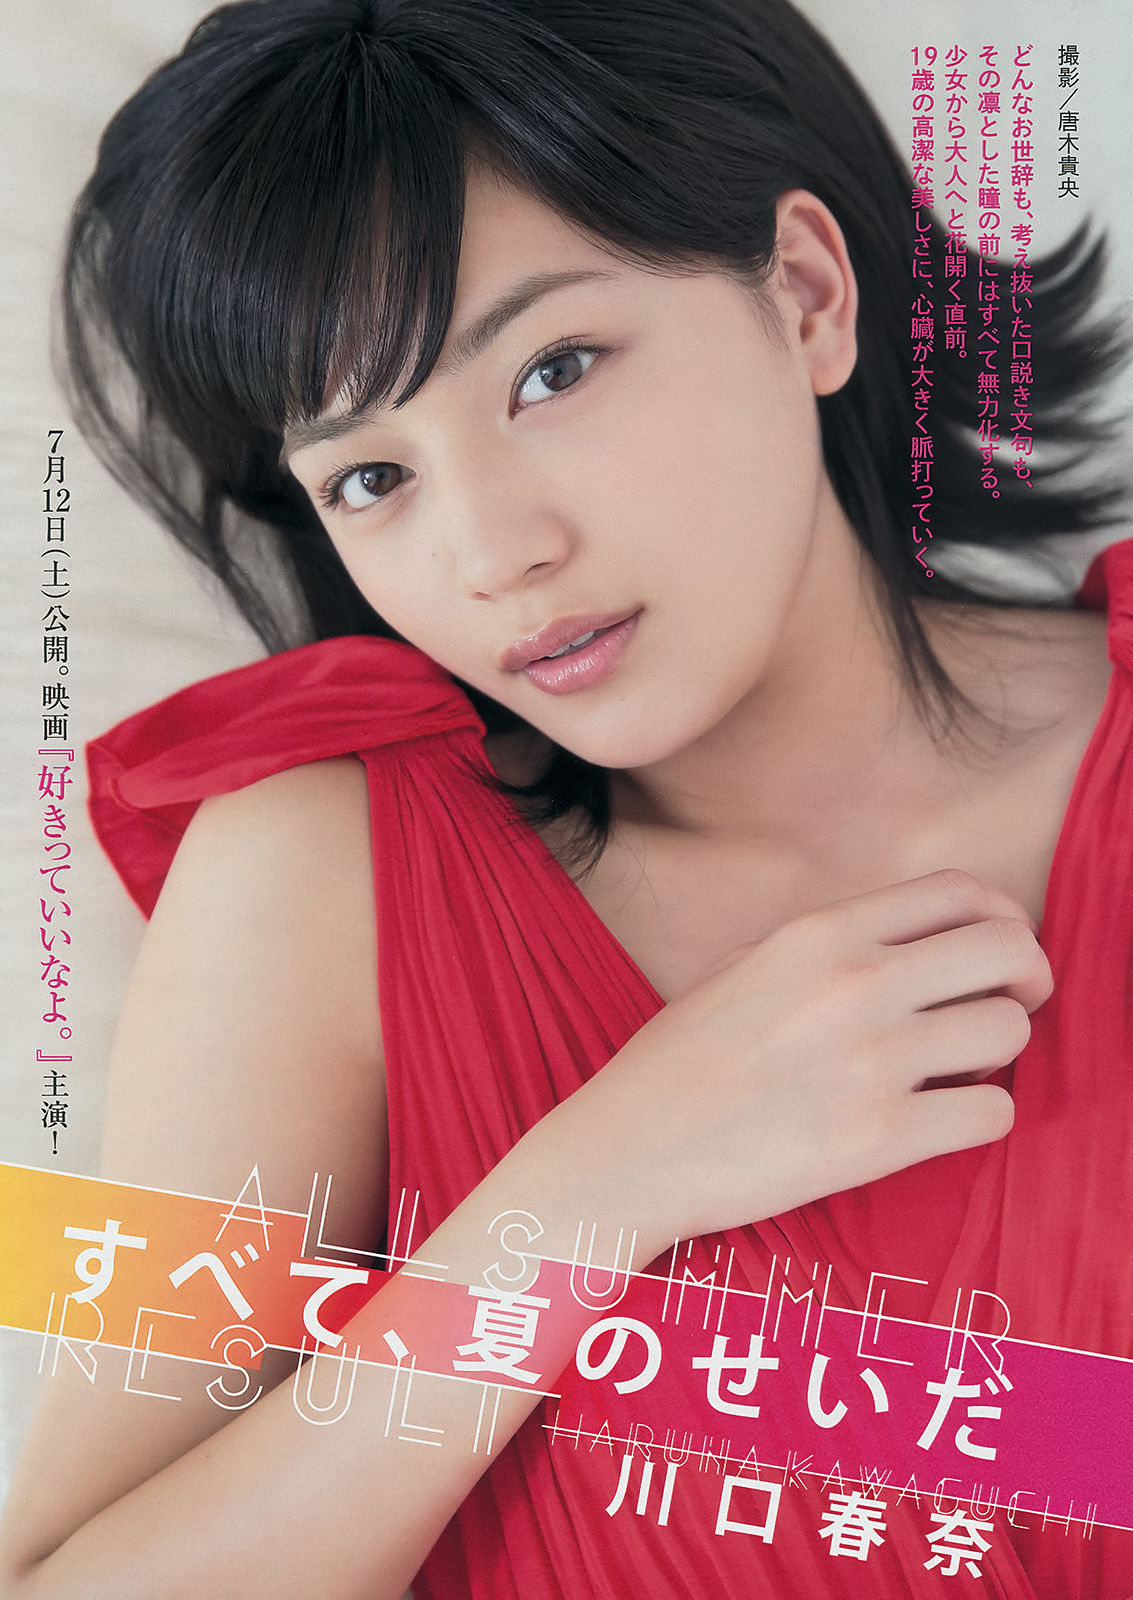 [Young Magazine] Ikumi Hisamatsu Haruna Kawaguchi 2014 No.32 Photograph Page 5 No.137c02